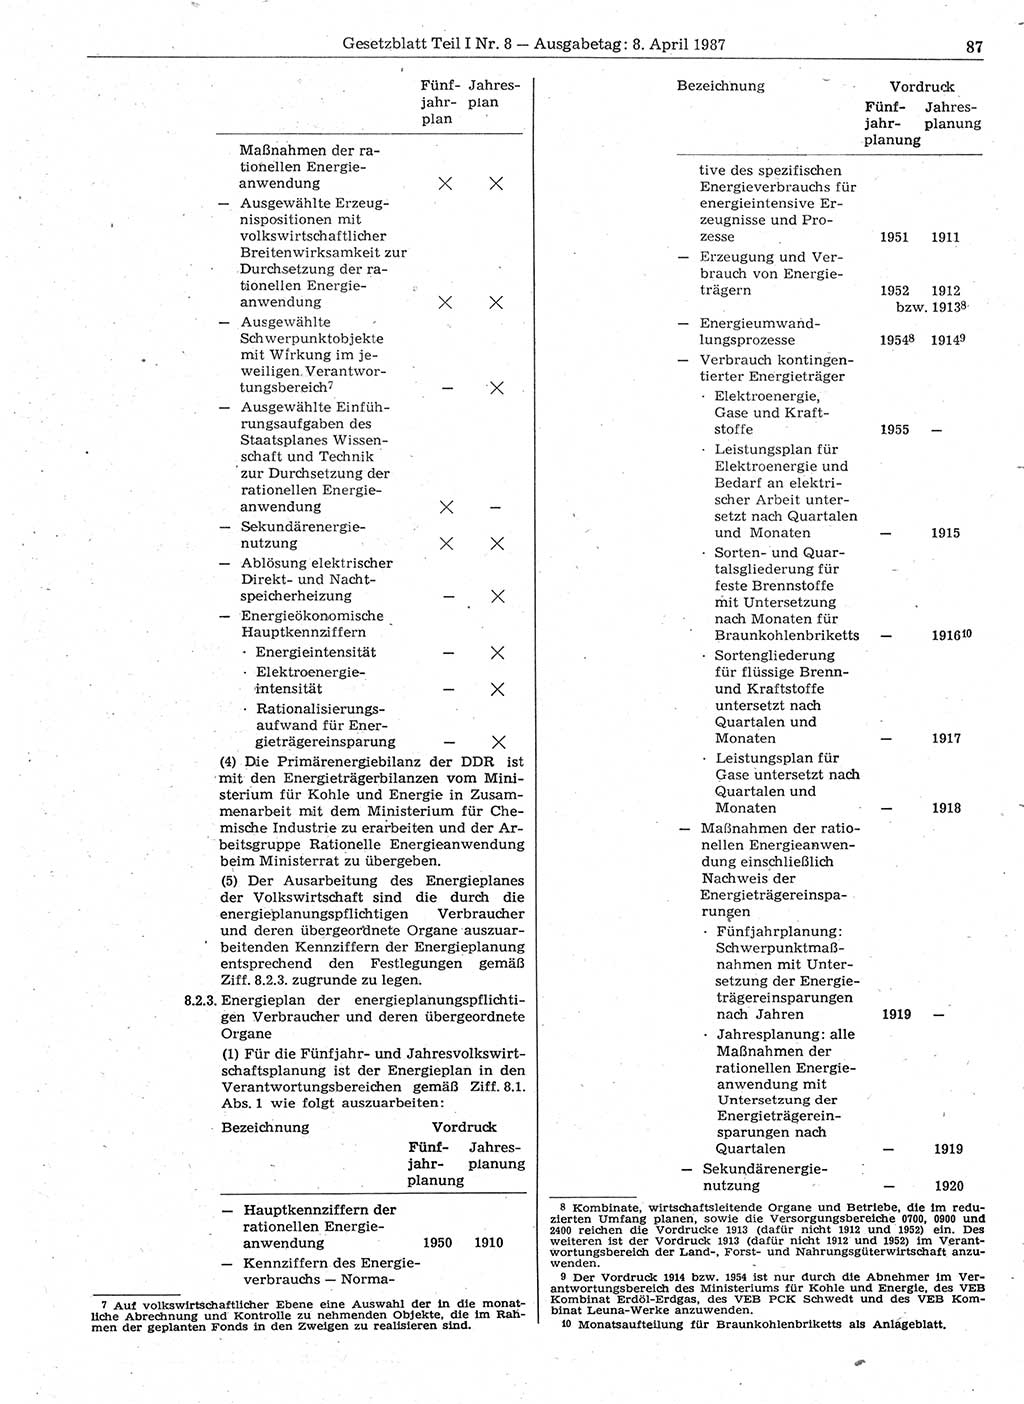 Gesetzblatt (GBl.) der Deutschen Demokratischen Republik (DDR) Teil Ⅰ 1987, Seite 87 (GBl. DDR Ⅰ 1987, S. 87)